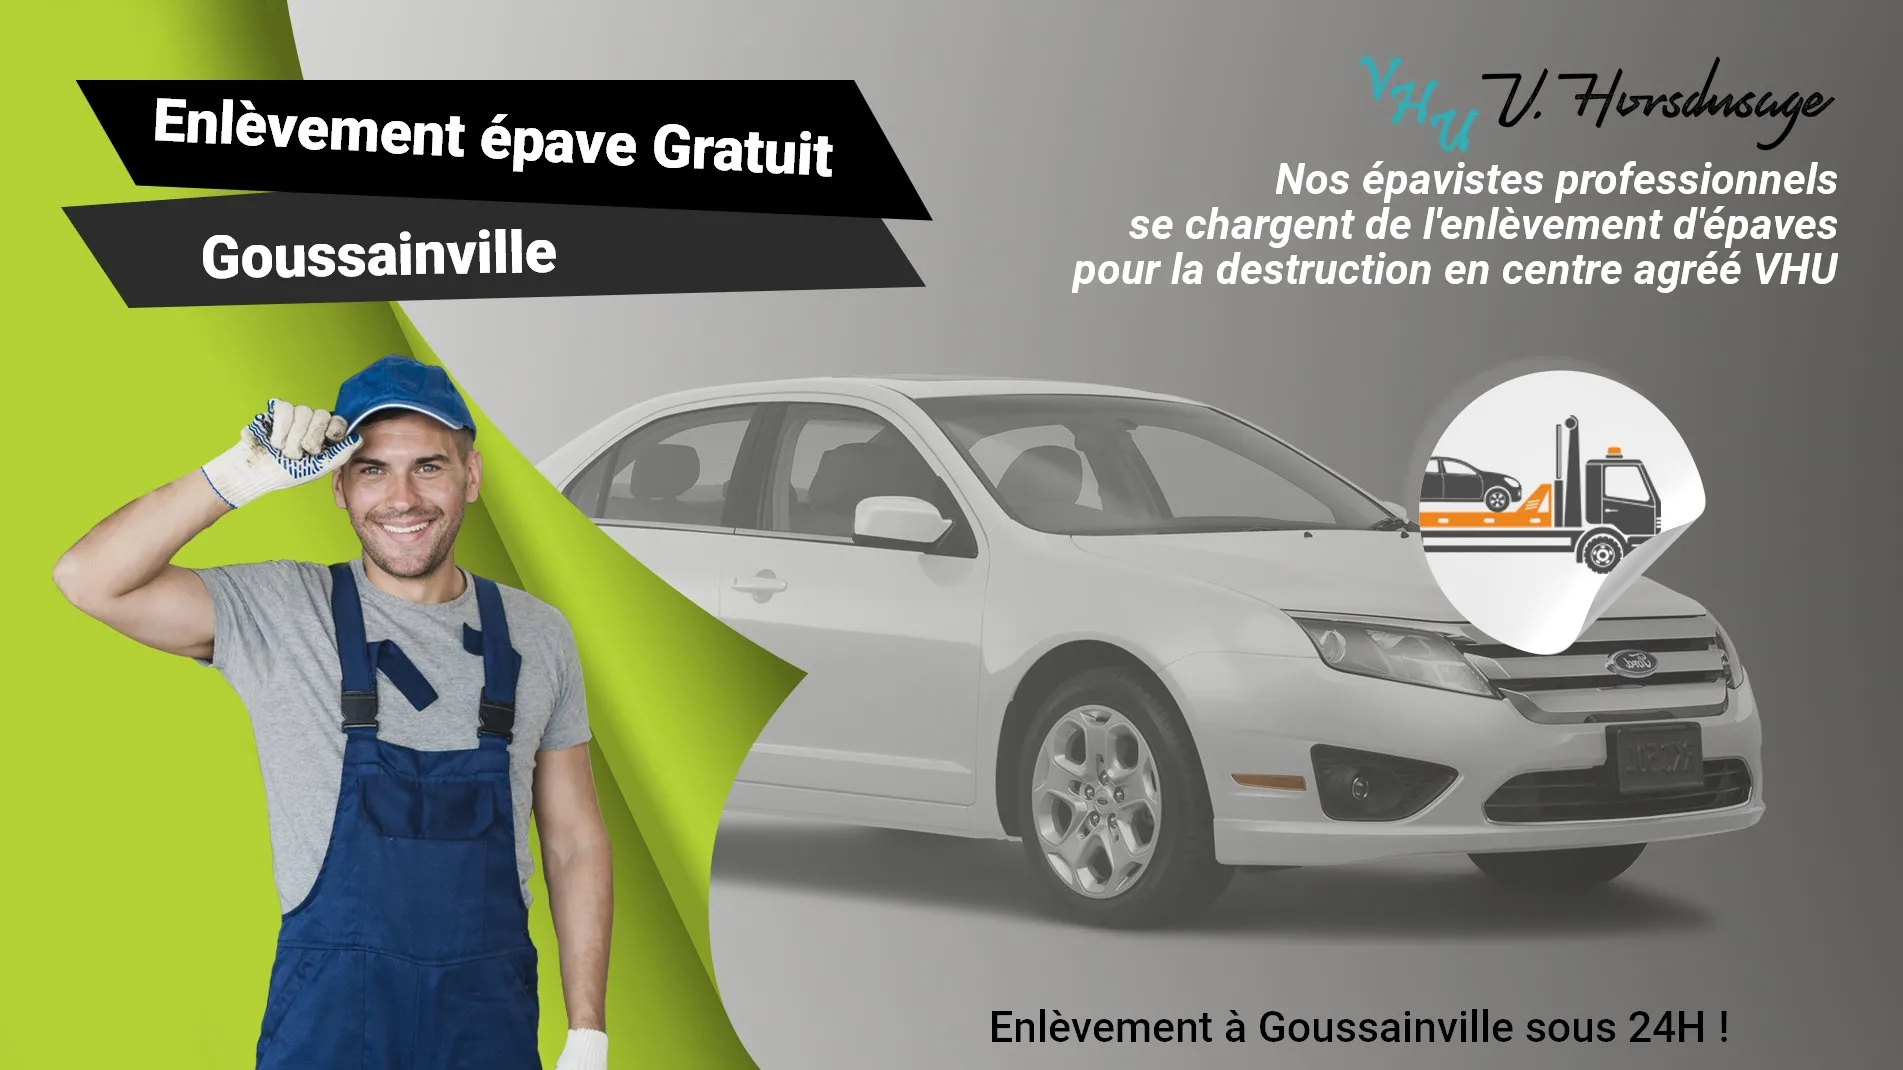 Pour un enlèvement gratuit à Goussainville, contactez nos épavistes agréé VHU